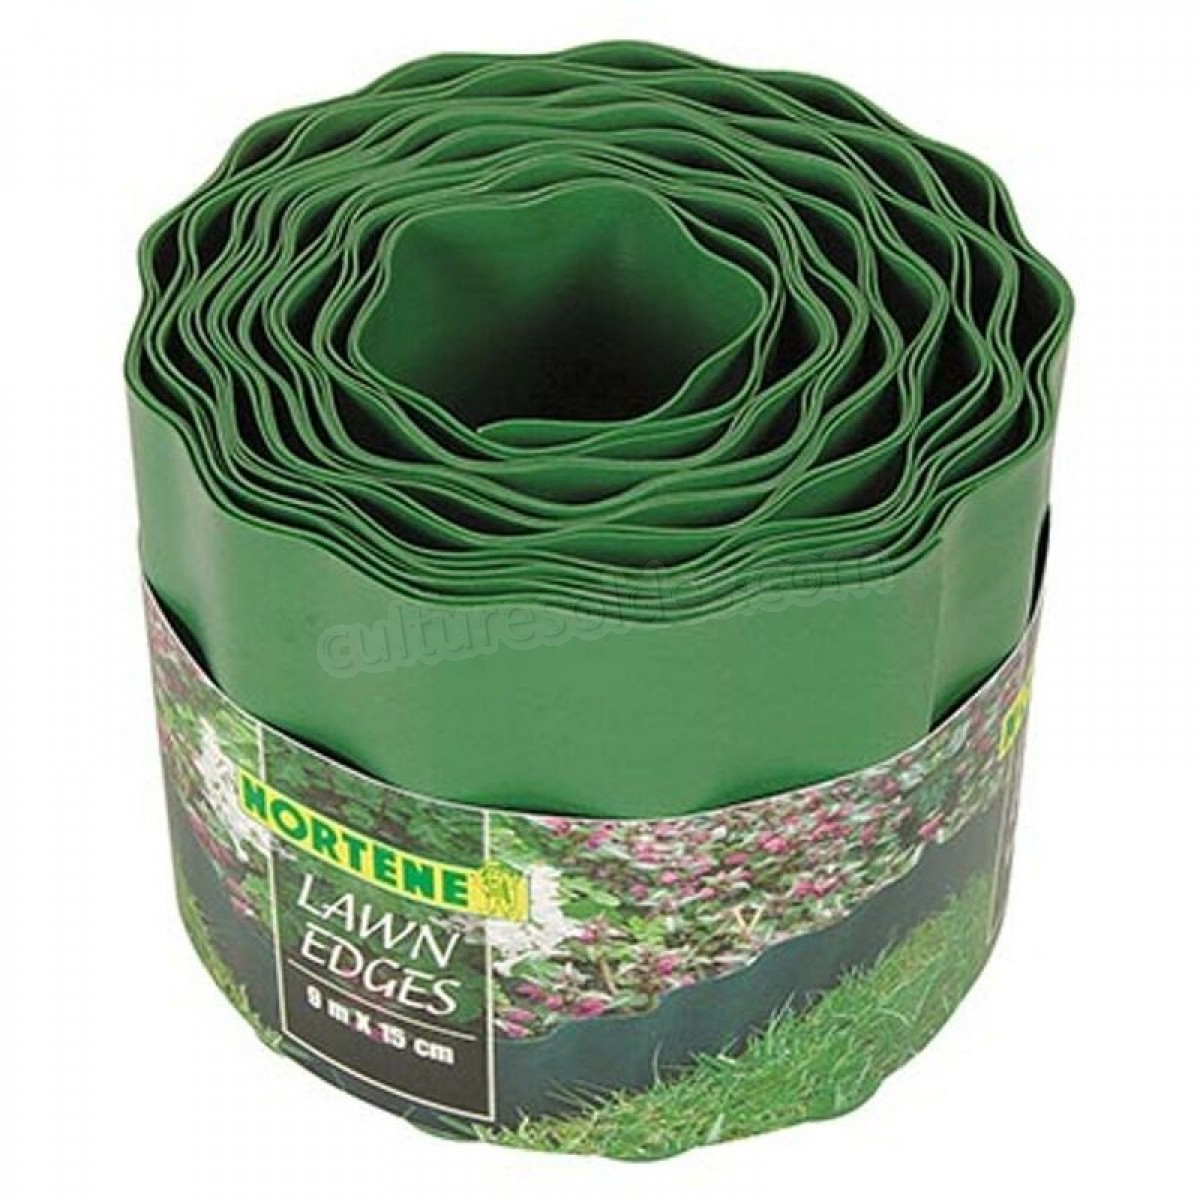 Bordure de pelouse Ubbink 9 m x 15 cm soldes en ligne - Bordure de pelouse Ubbink 9 m x 15 cm soldes en ligne